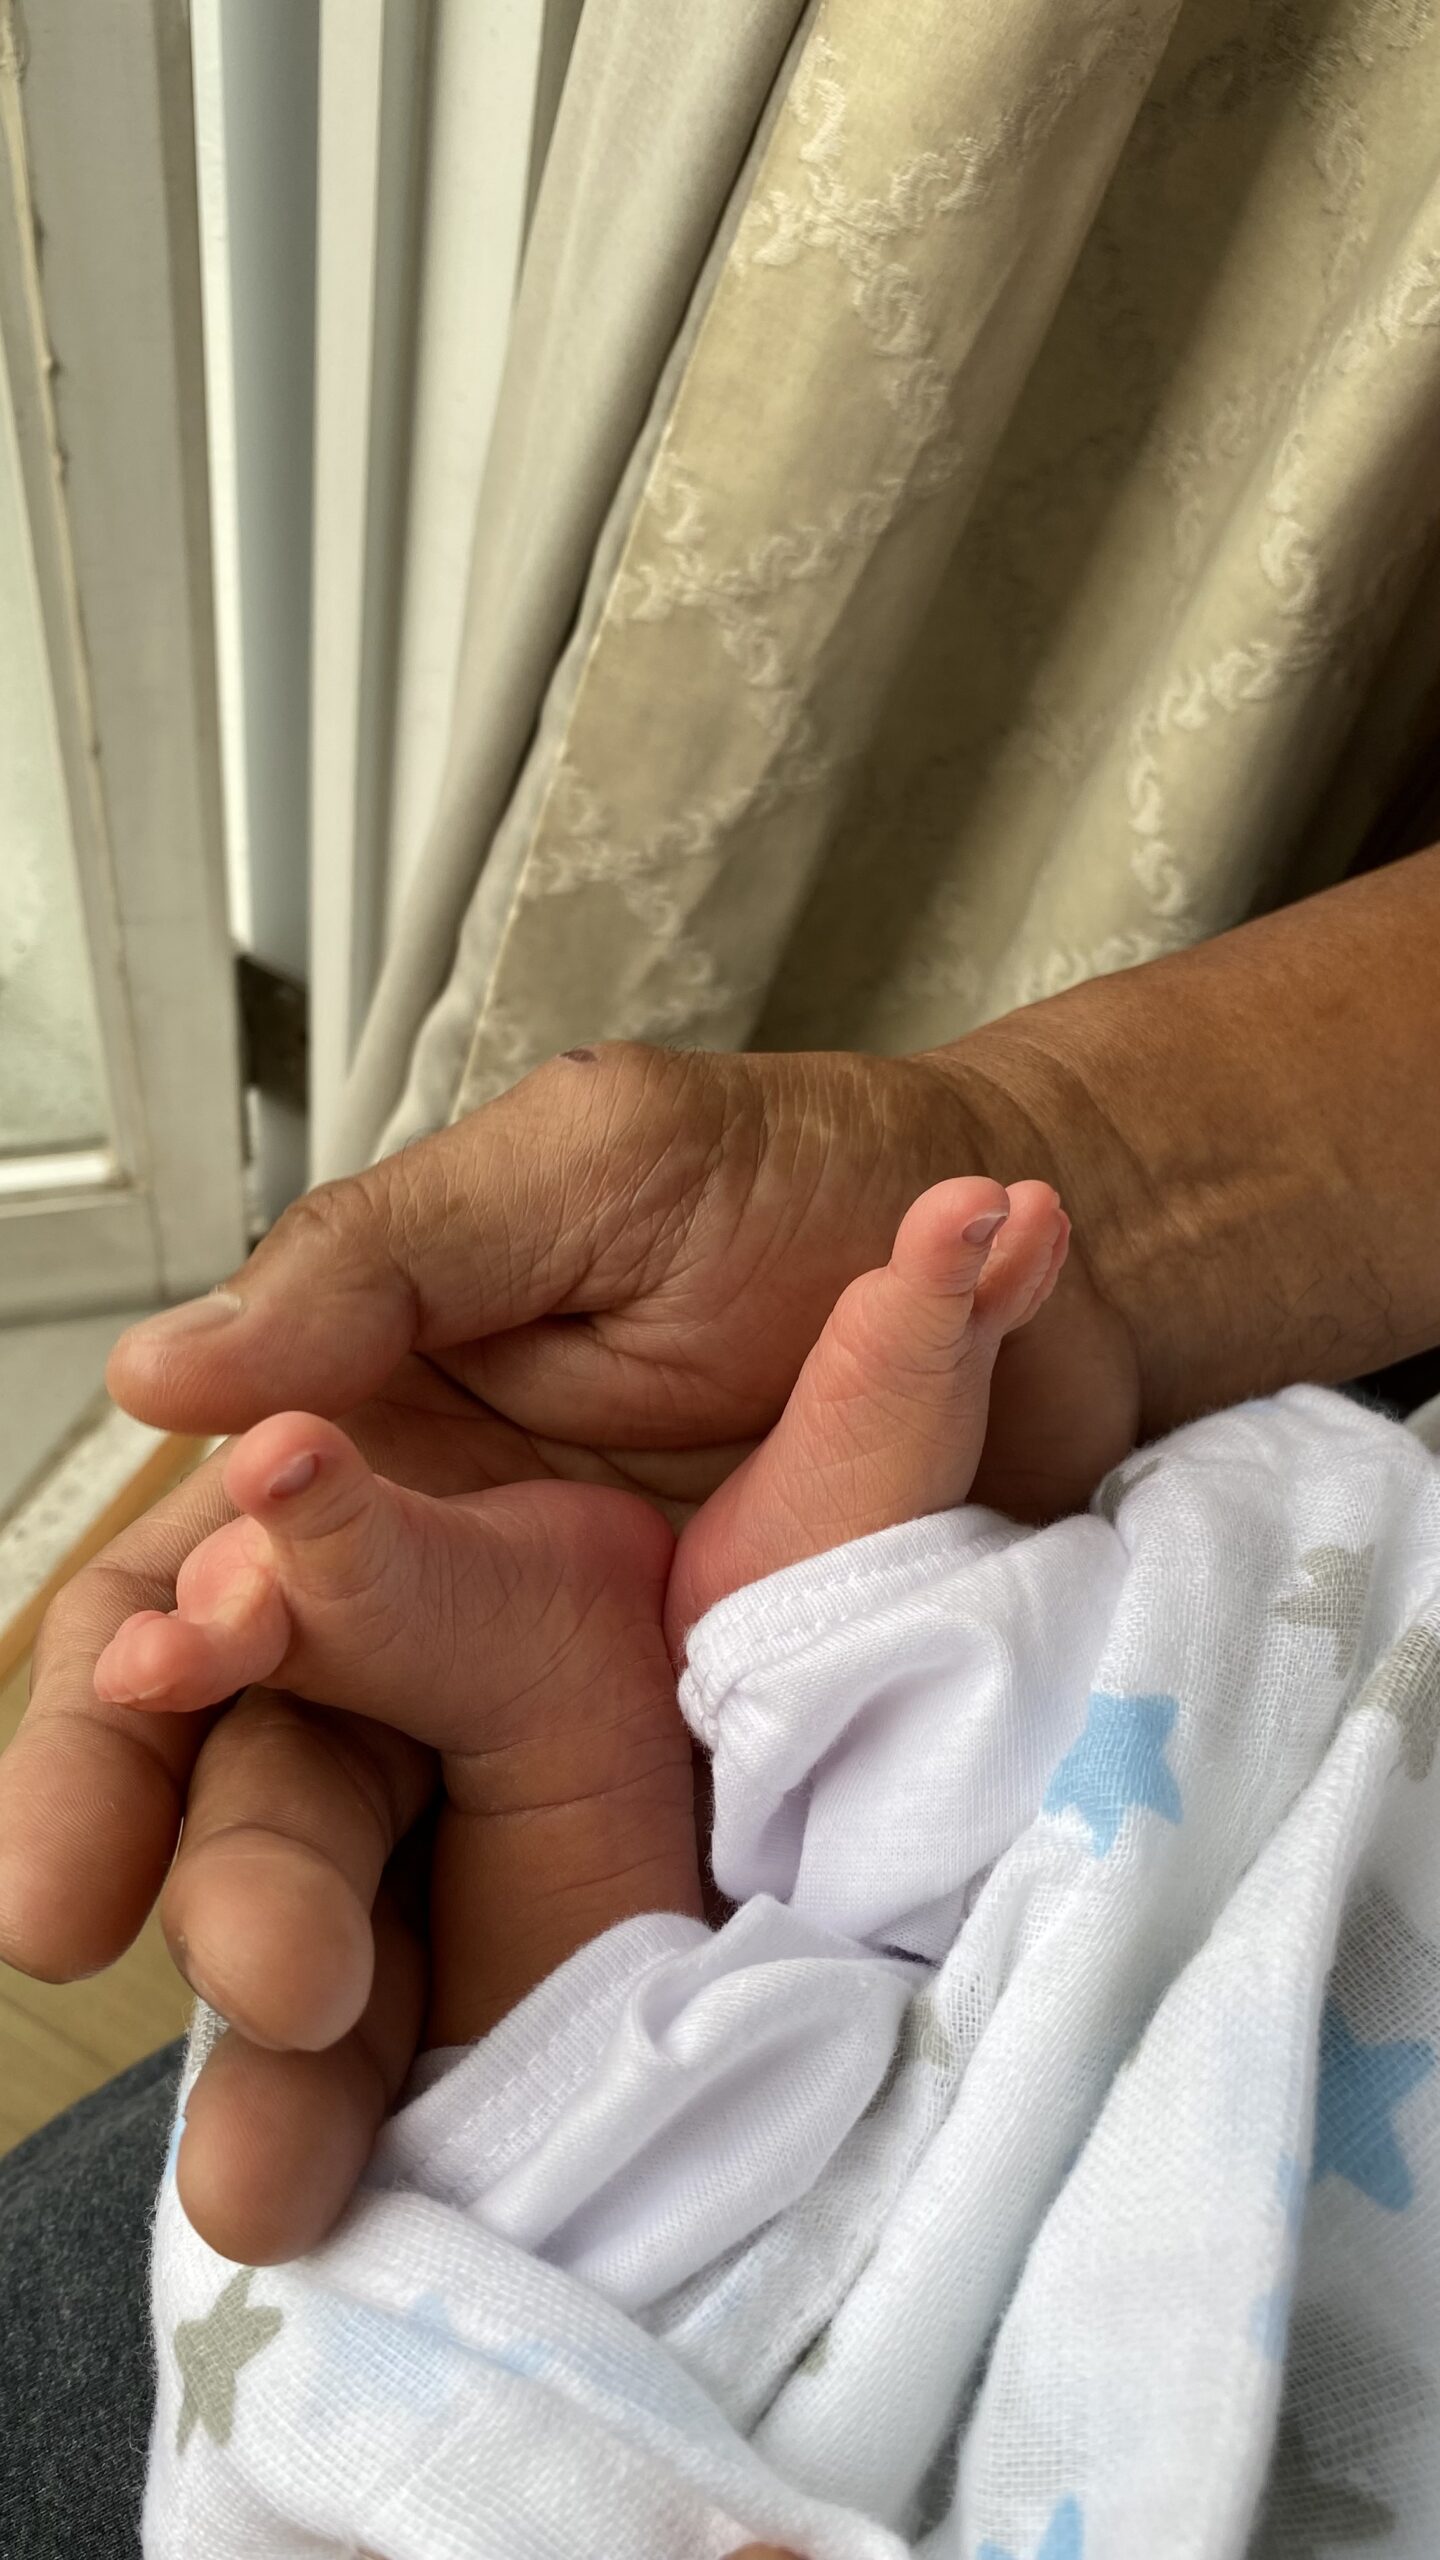 Lolo holds baby's tiny feet